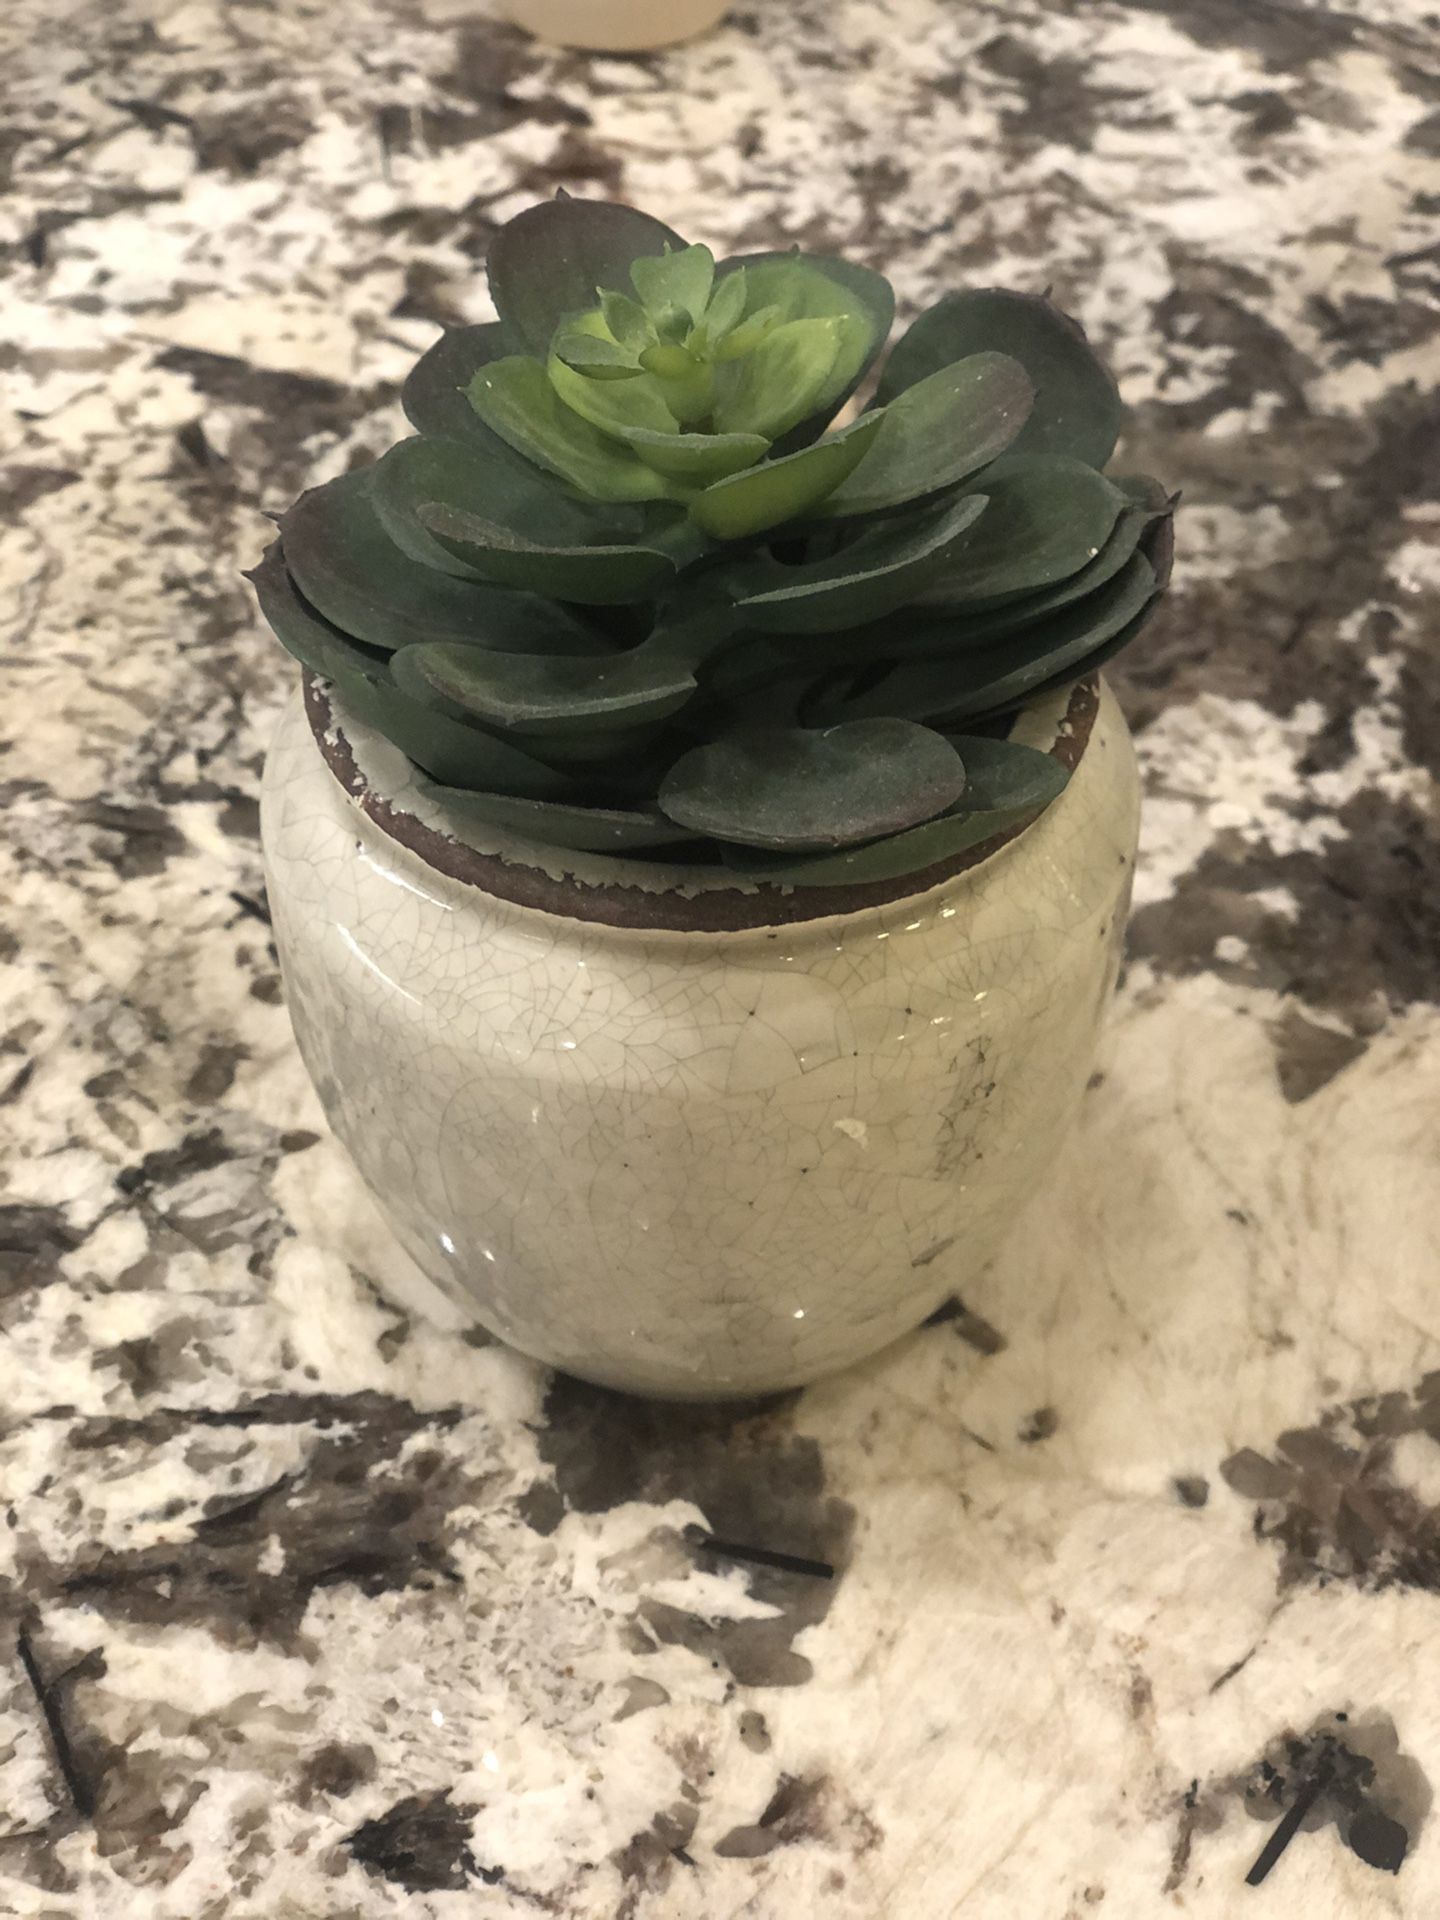 Succulent and pot